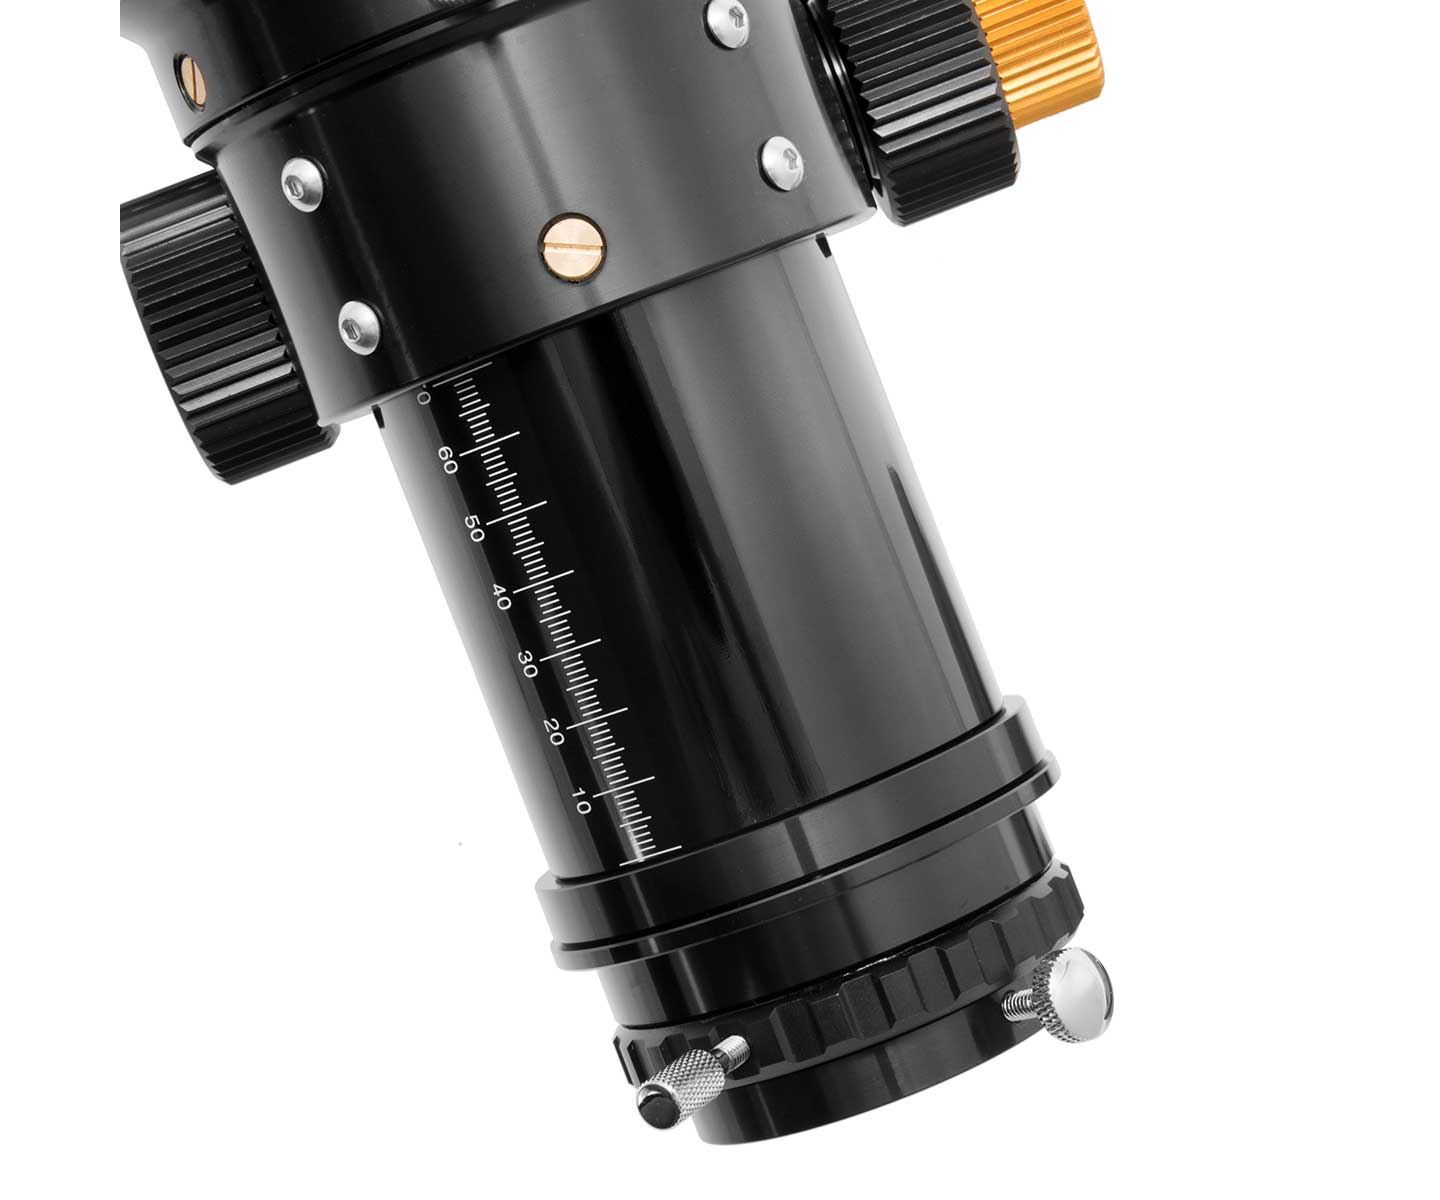  TS-Optics rifrattore apocromatico Photoline doppietto FPL-53 Lantanio 125mm f/7,8 